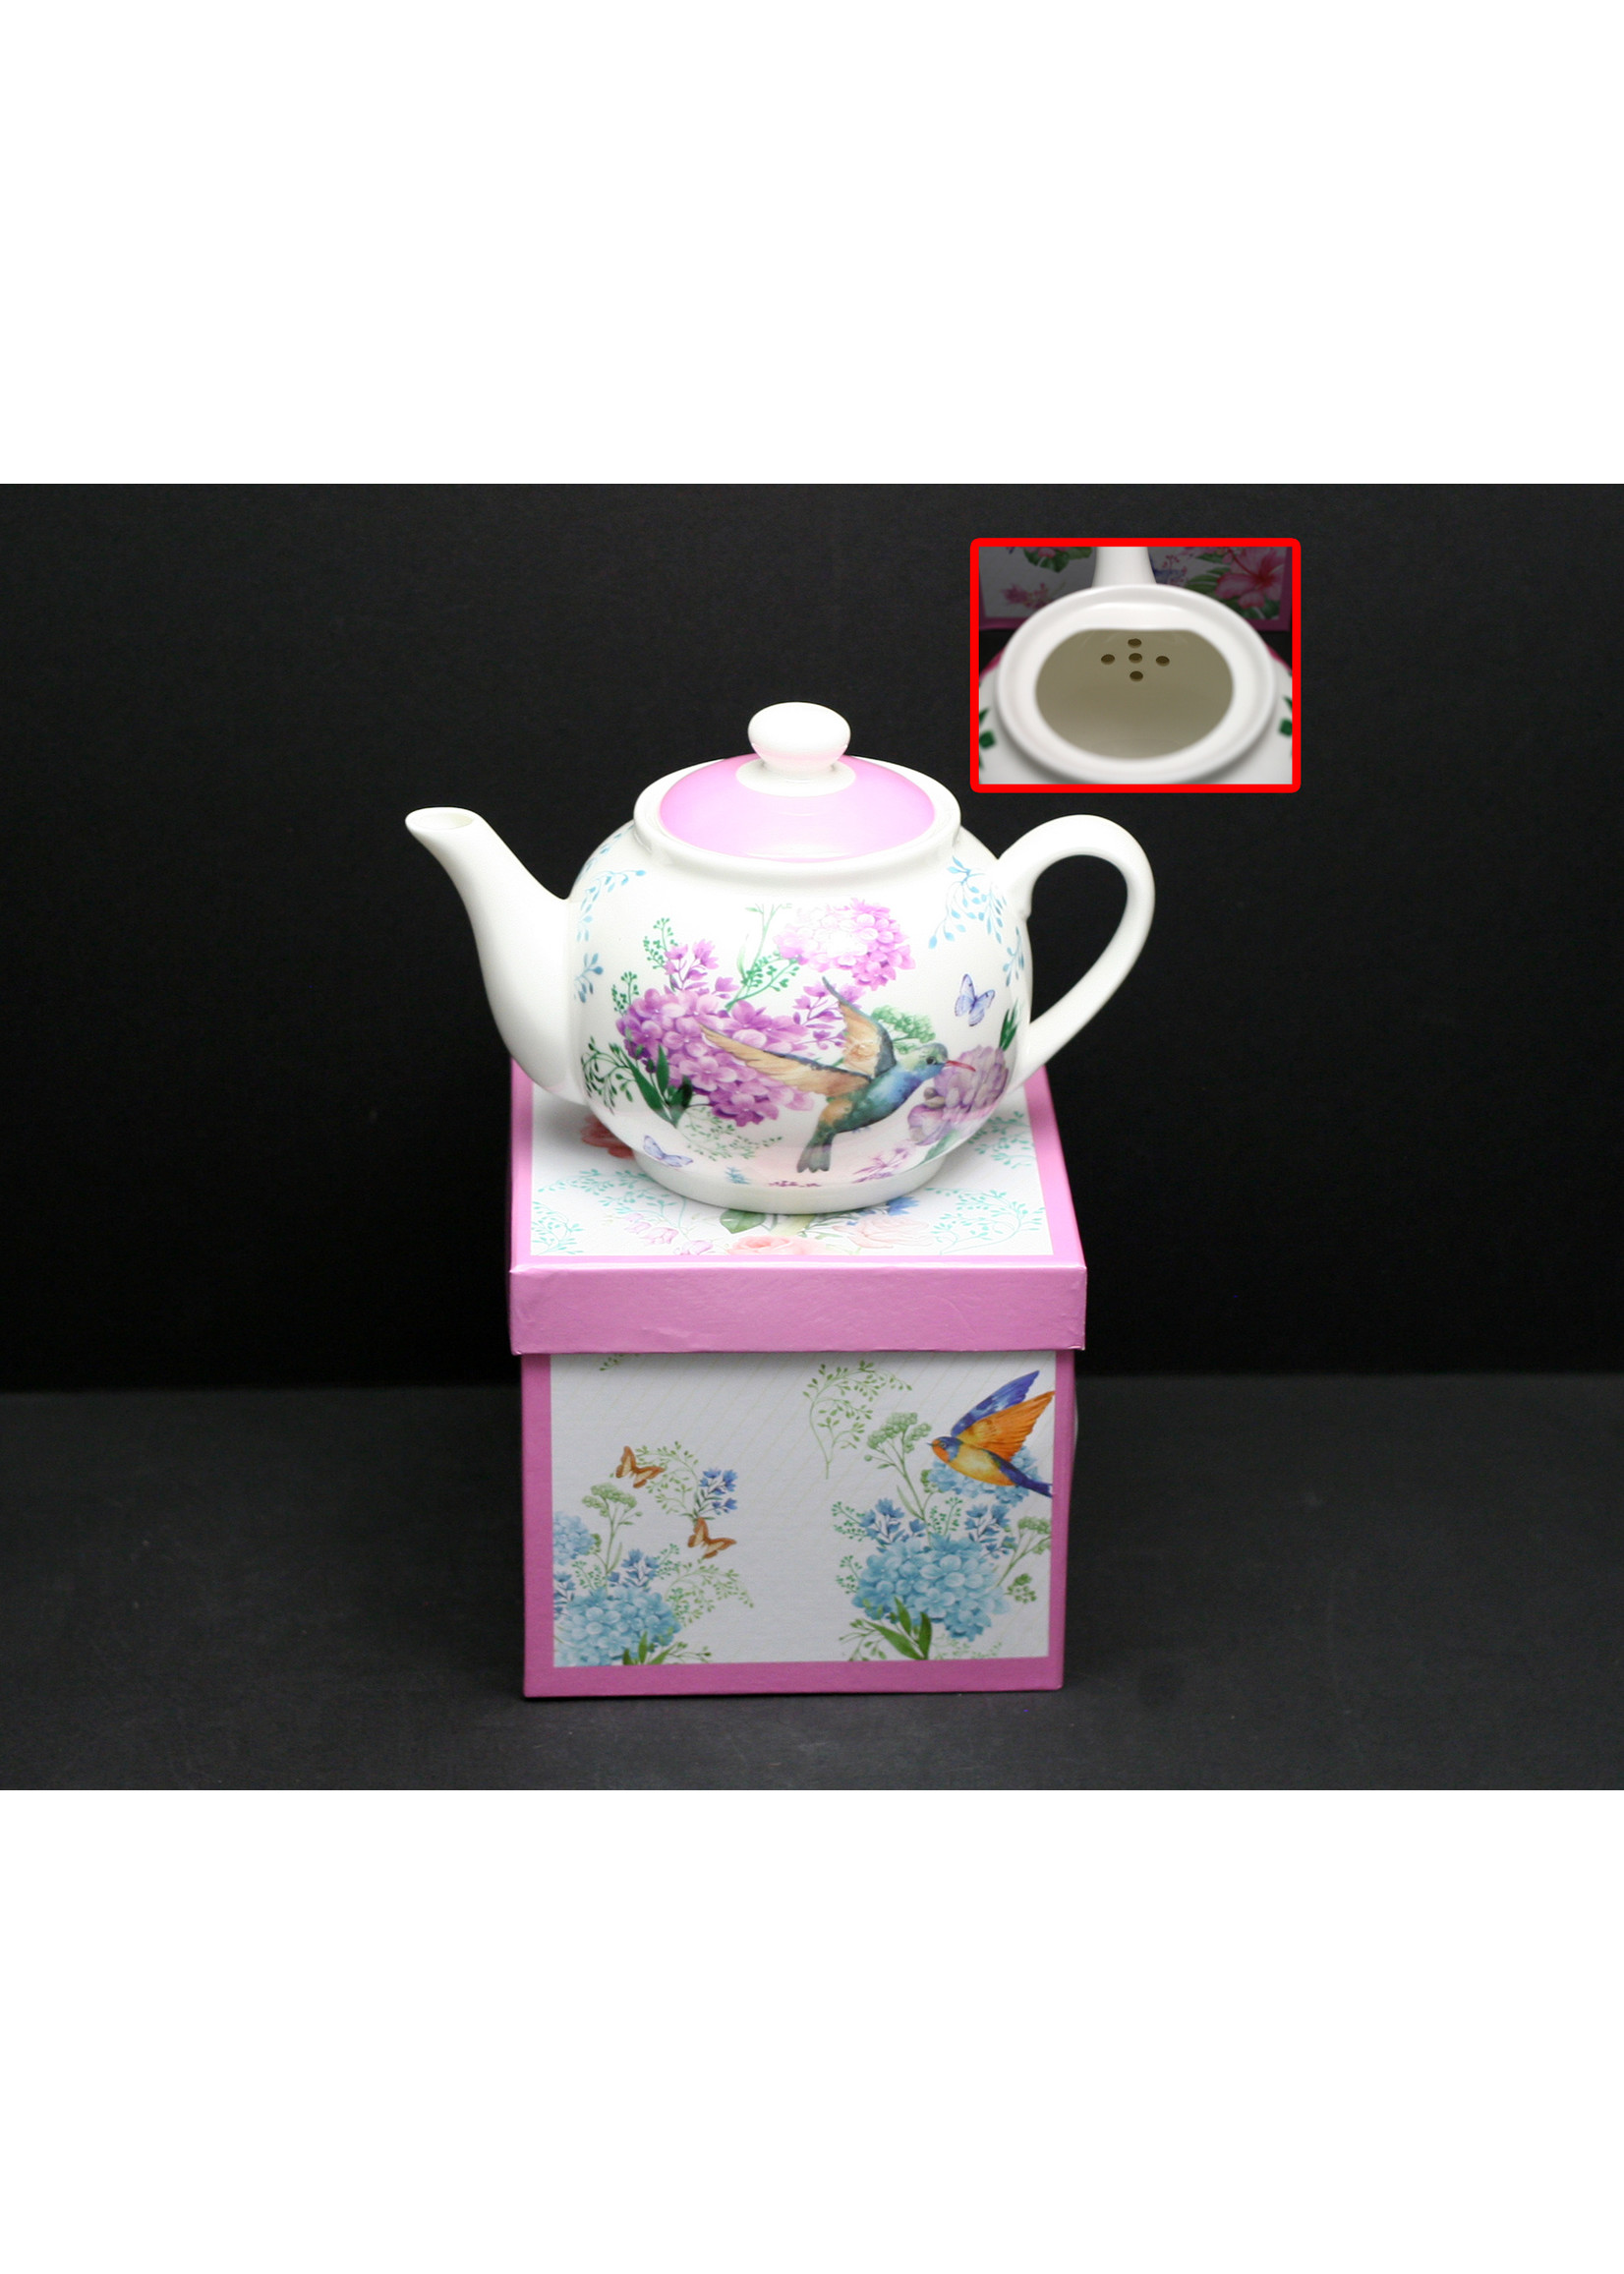 ACE 900ml Porcelain Teapot, Humming Bird